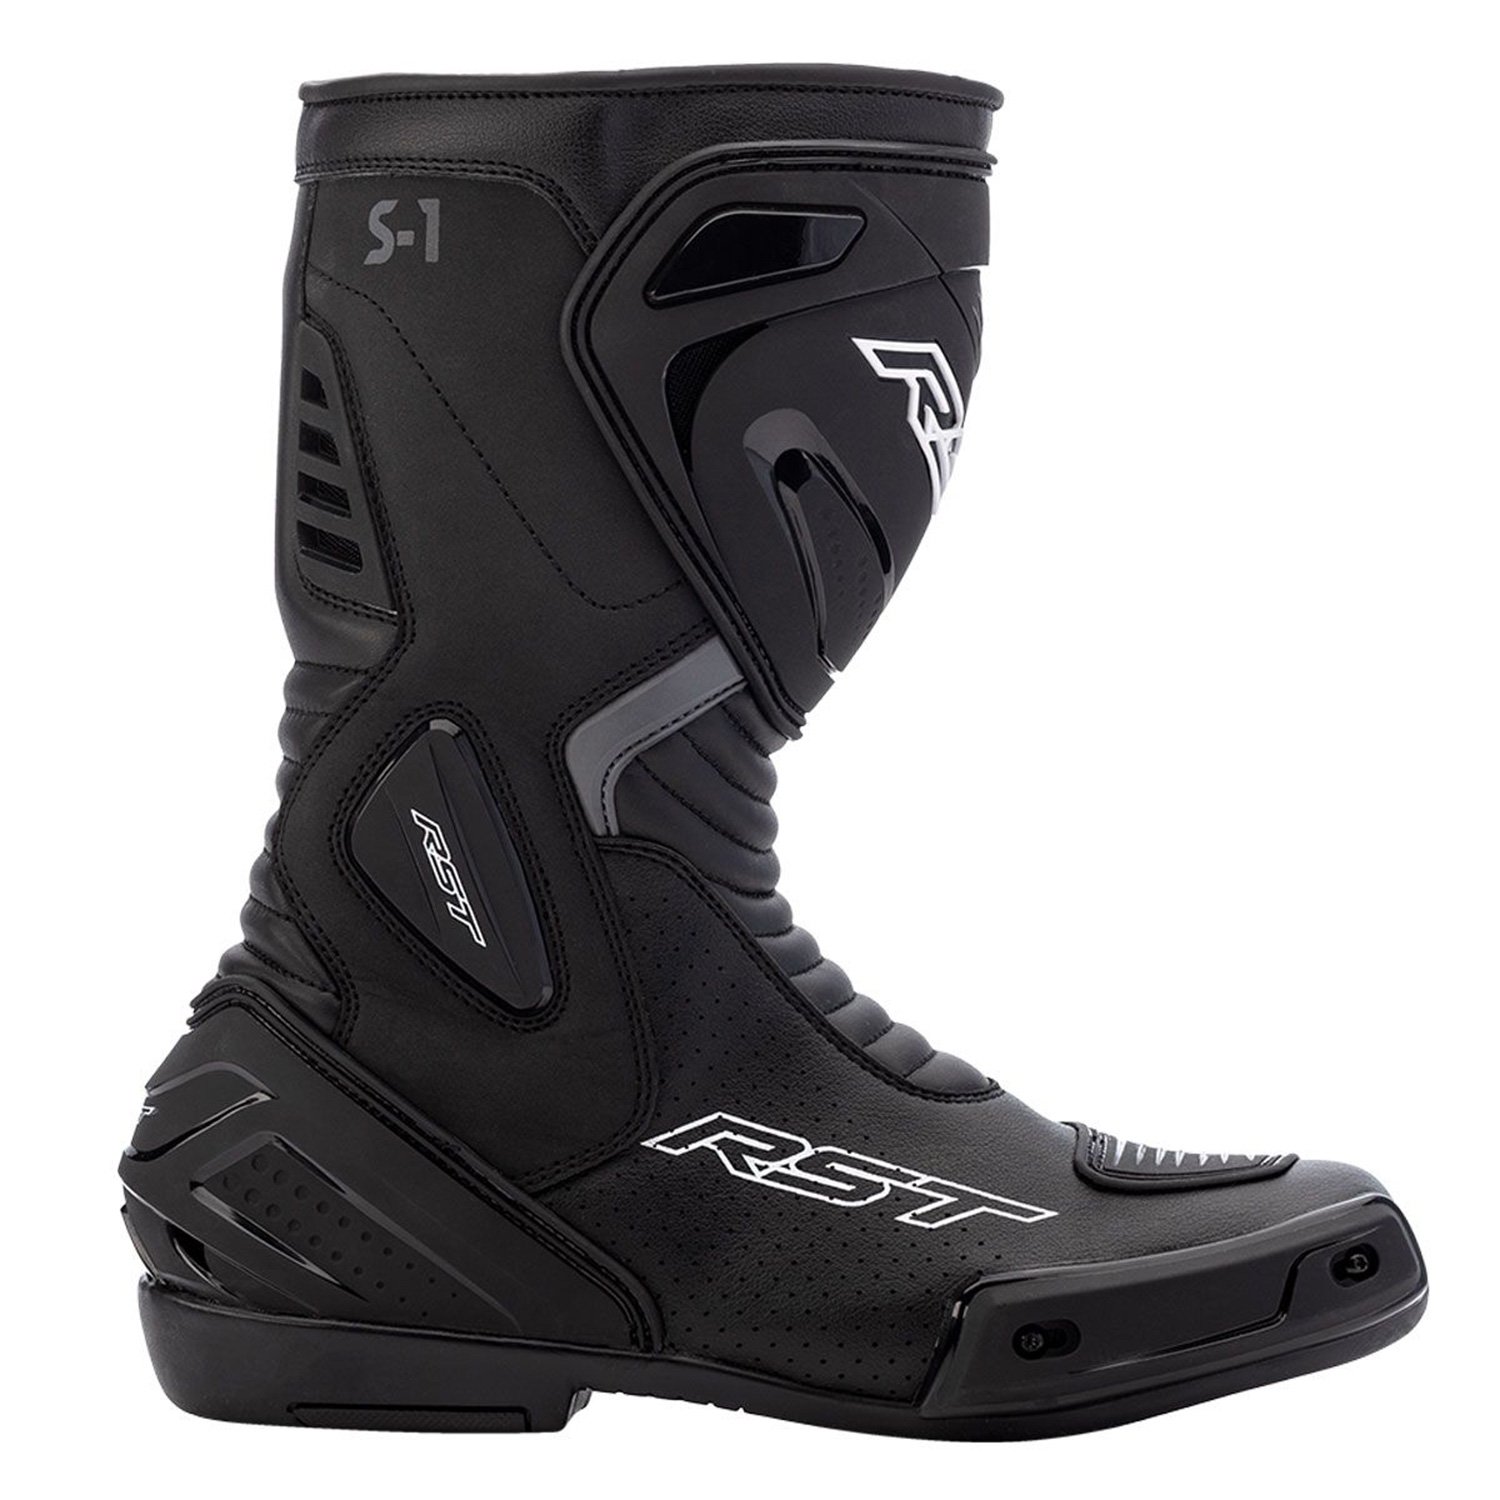 Image of RST S1 Mens Ce Boot Black Size 47 EN